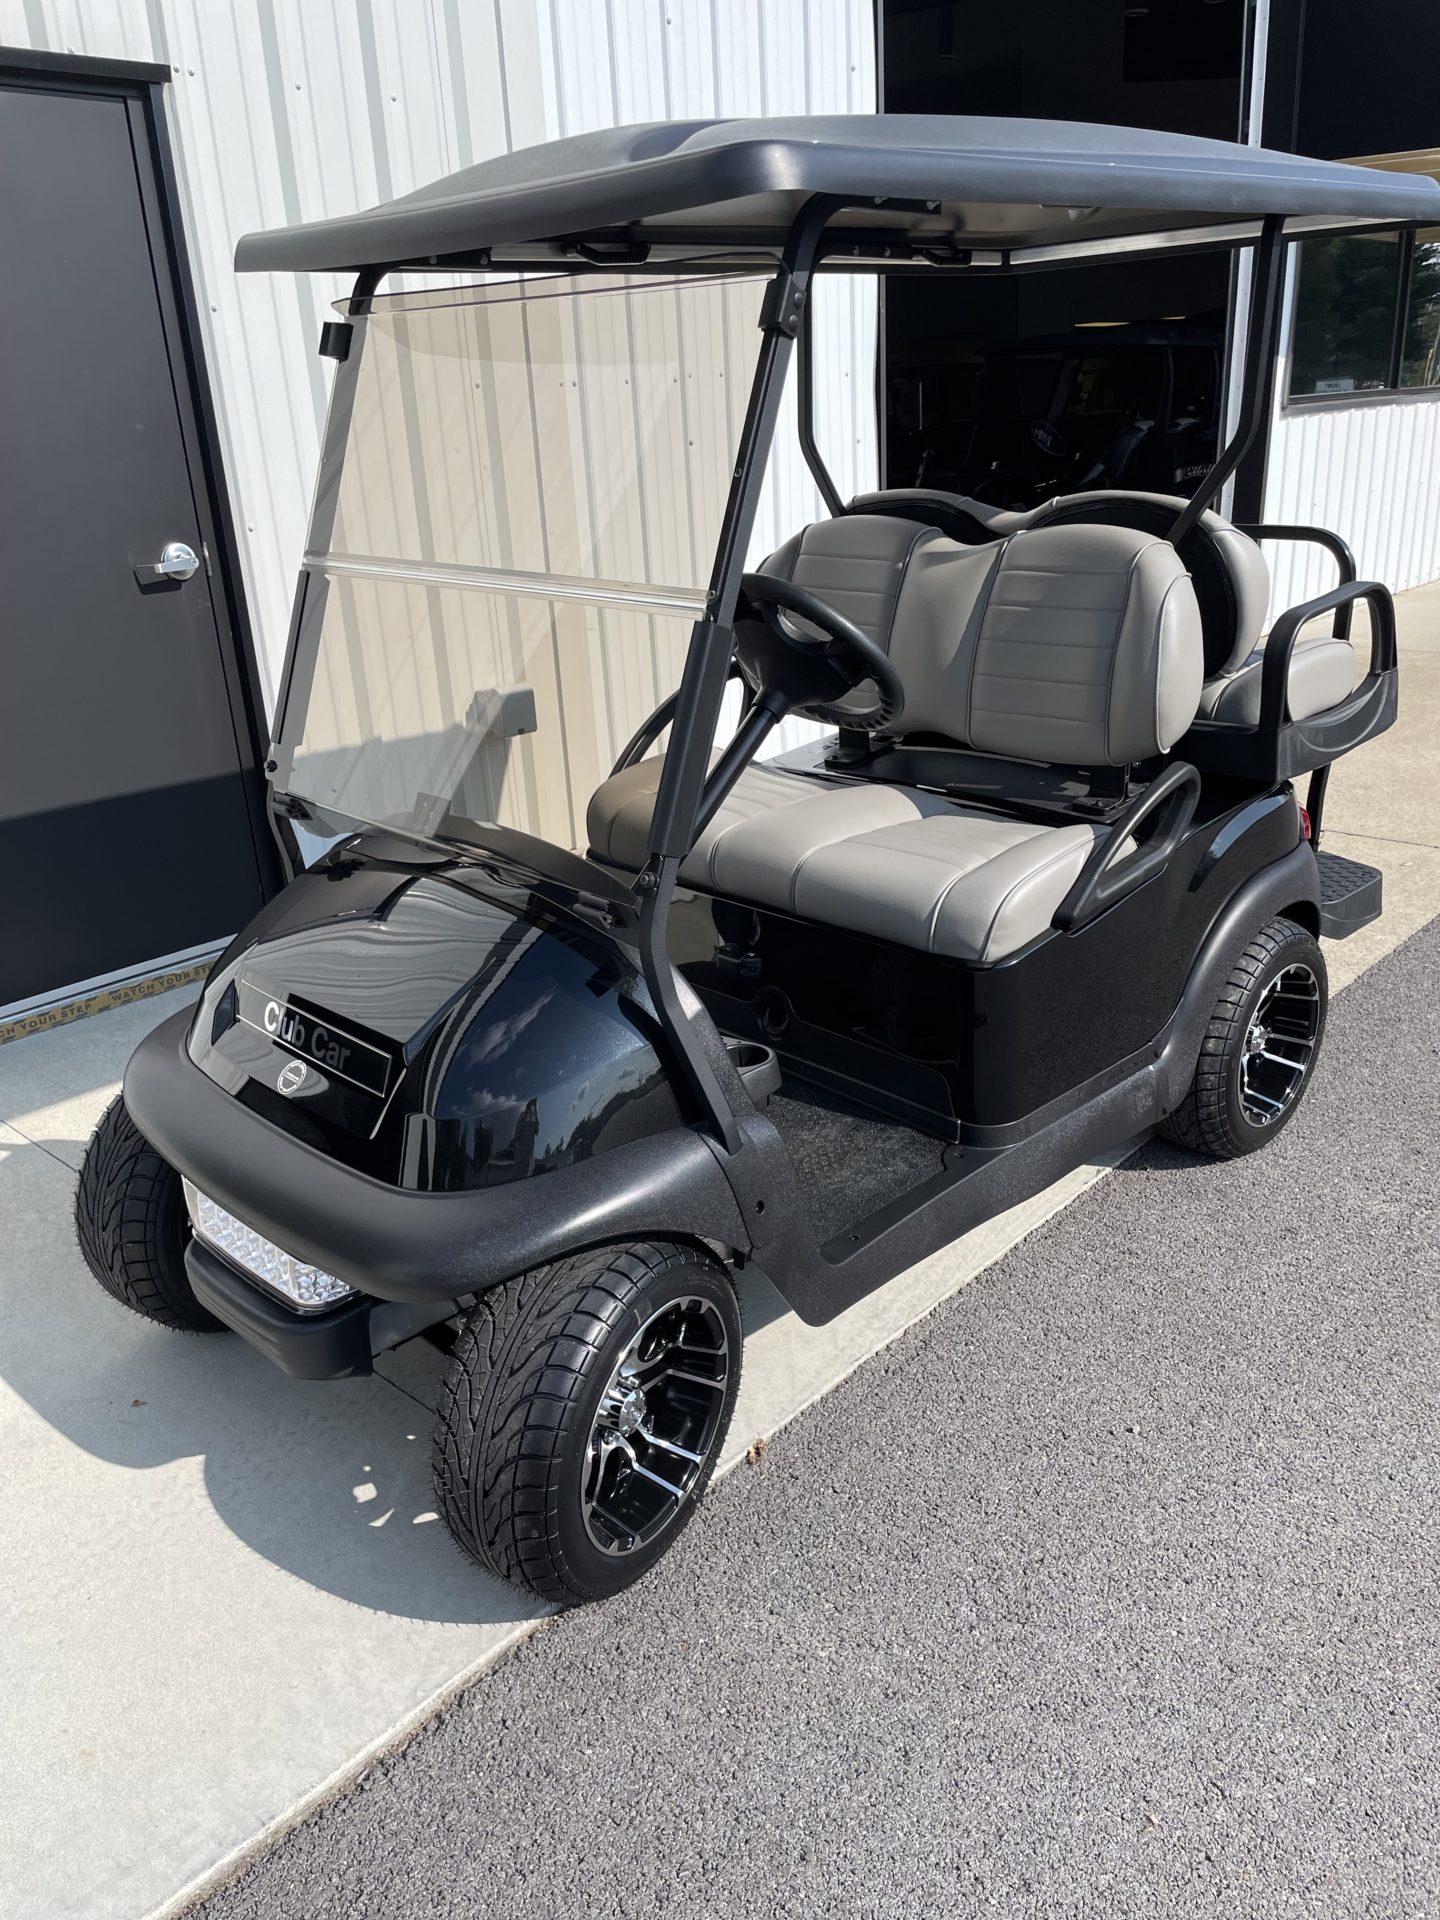 2018 CLUB CAR PRECEDENT - Saylors Golf Carts